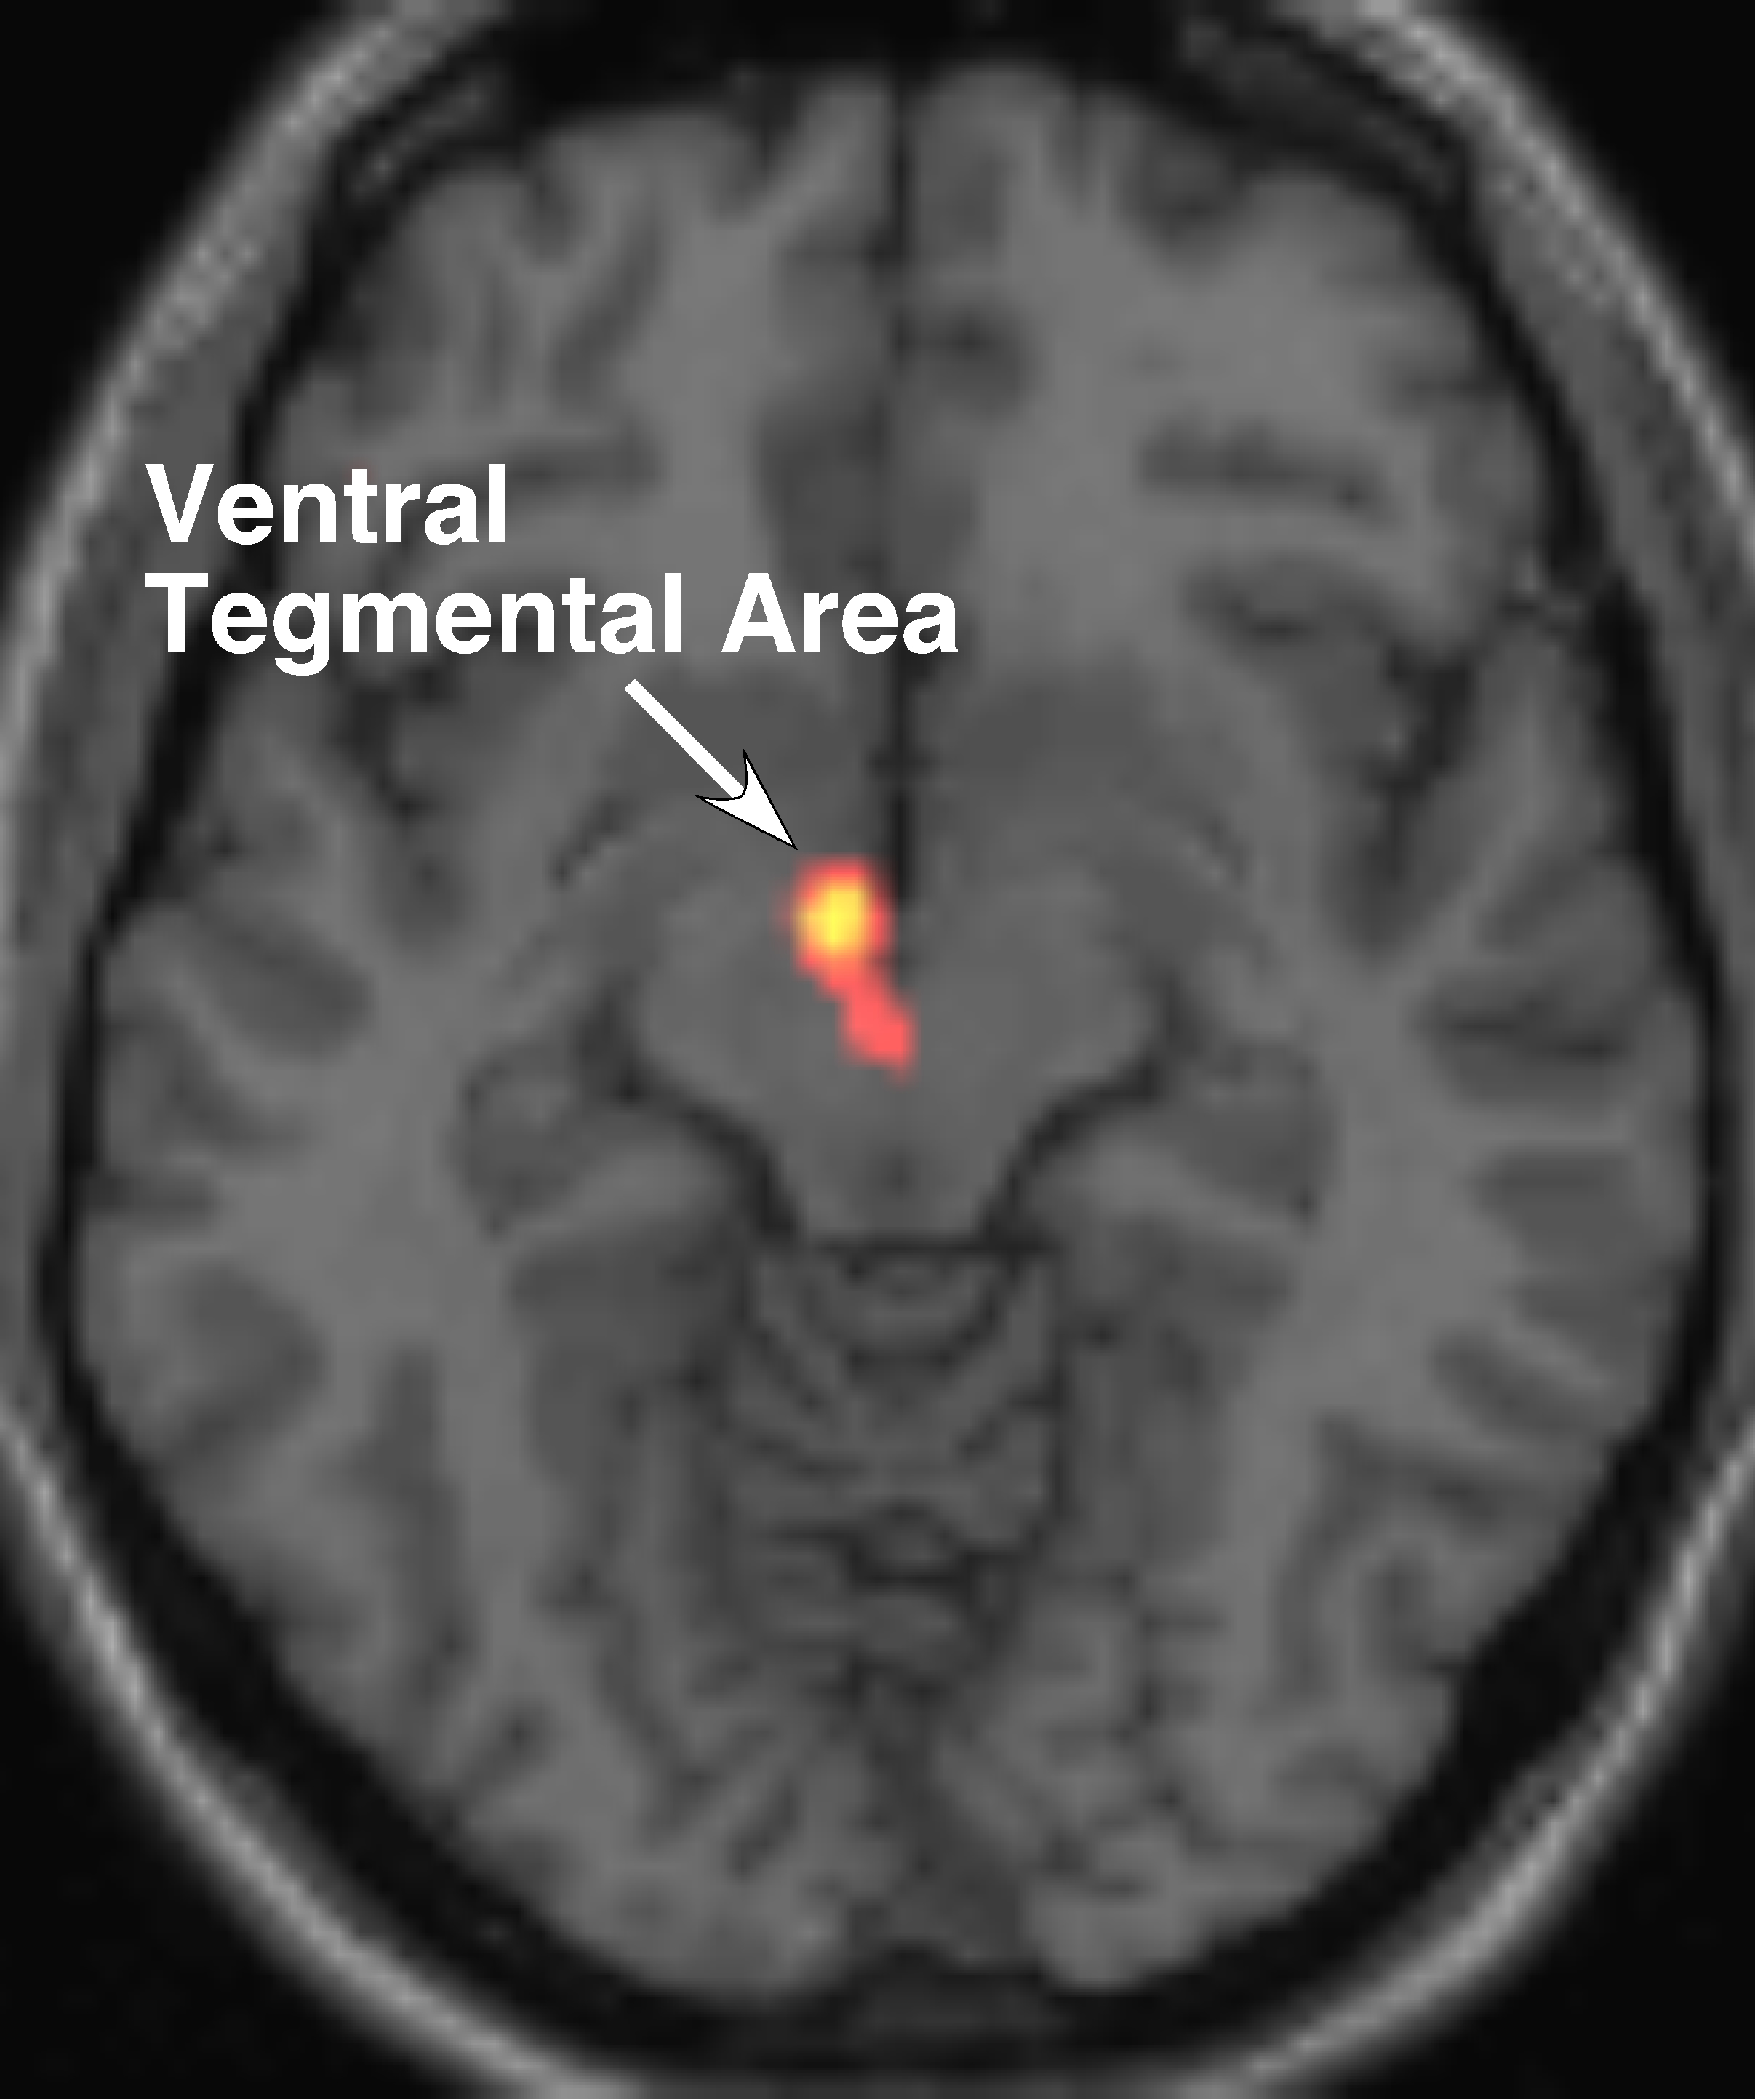 El área tegmental ventral genera dopamina y la manda a distintas regiones del cerebro